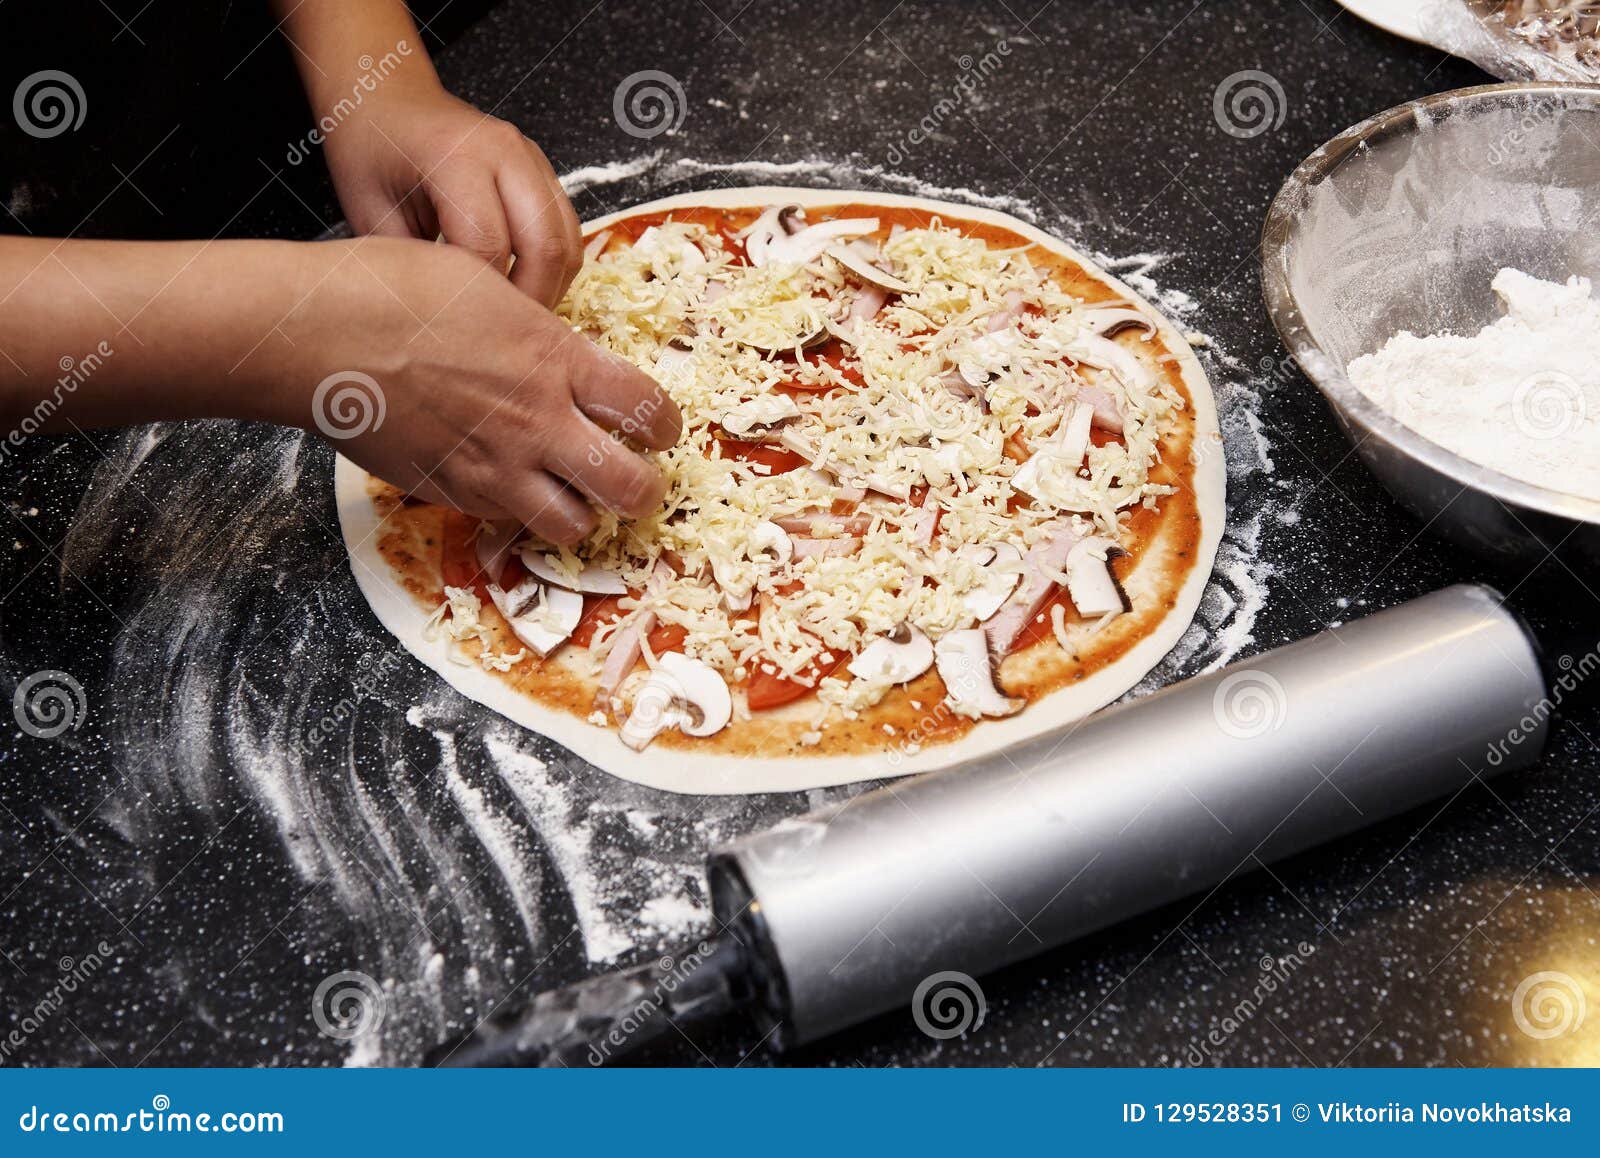 Что будет есть съесть сырое тесто. Процесс готовки пиццы. Тесто для пиццы вид сверху. Готовка пиццы с друзьями. Ингредиенты для теста пиццы.